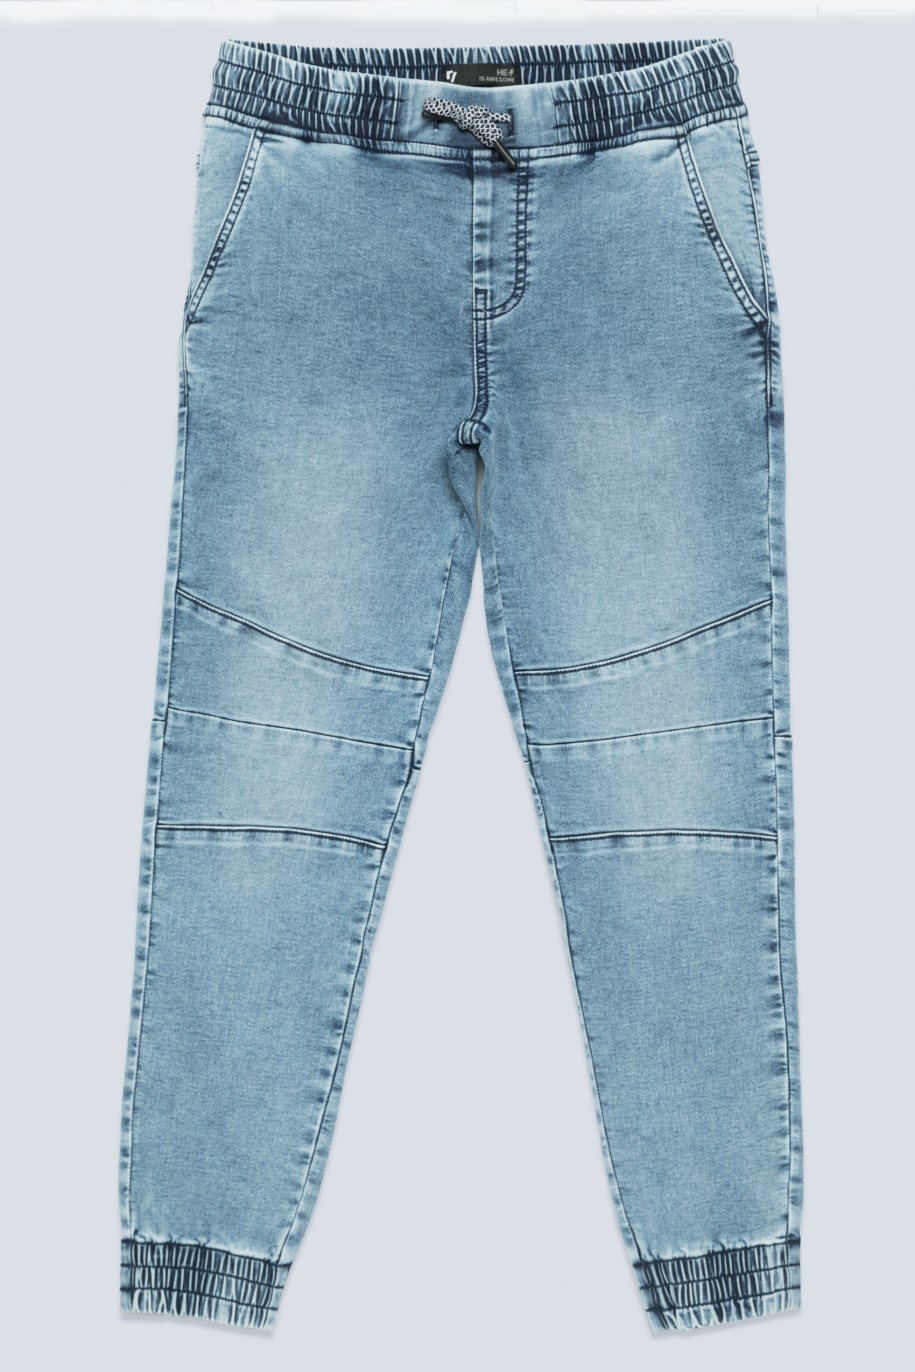 Niebieskie jeansy typu jogger ze ściągaczami dla chłopaka - 33581